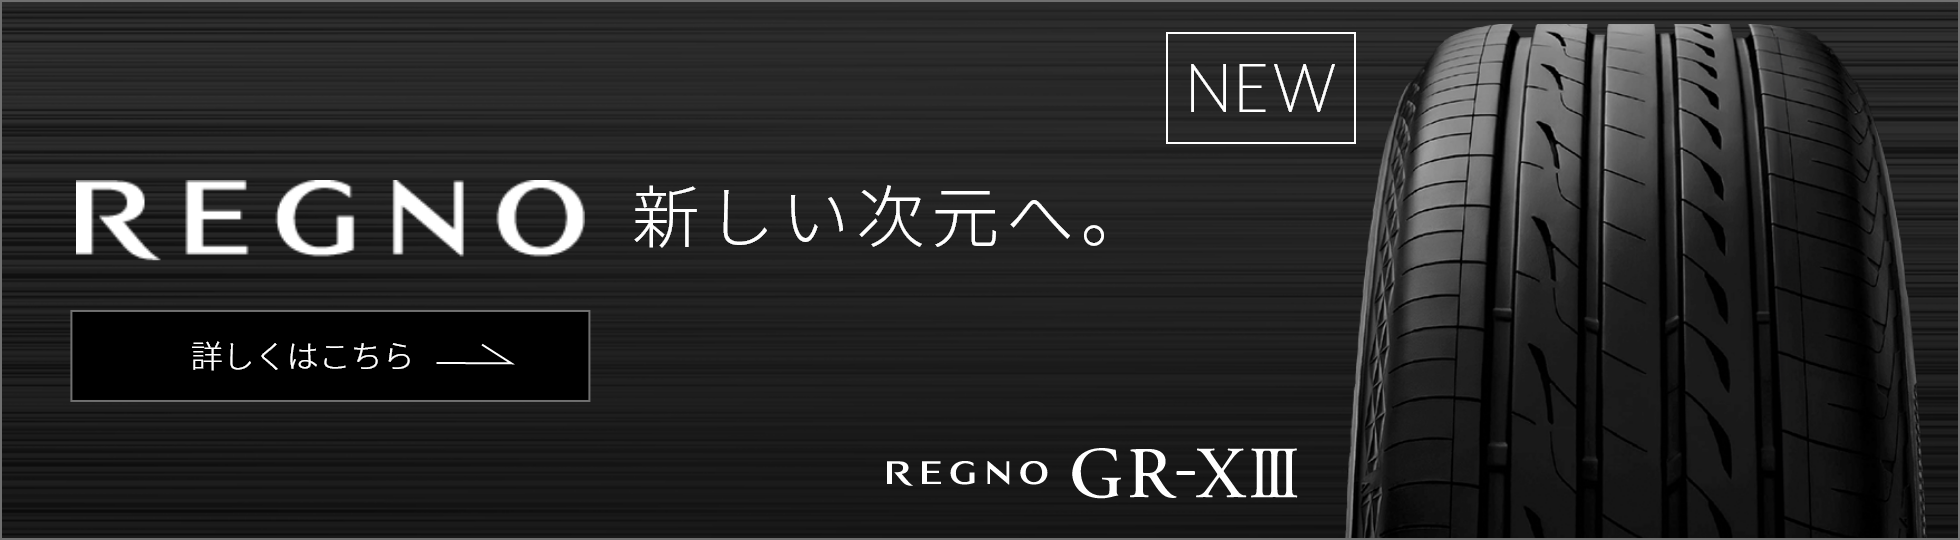 REGNO新しい次元へ REGNOGR-XIII　詳しくはこちら